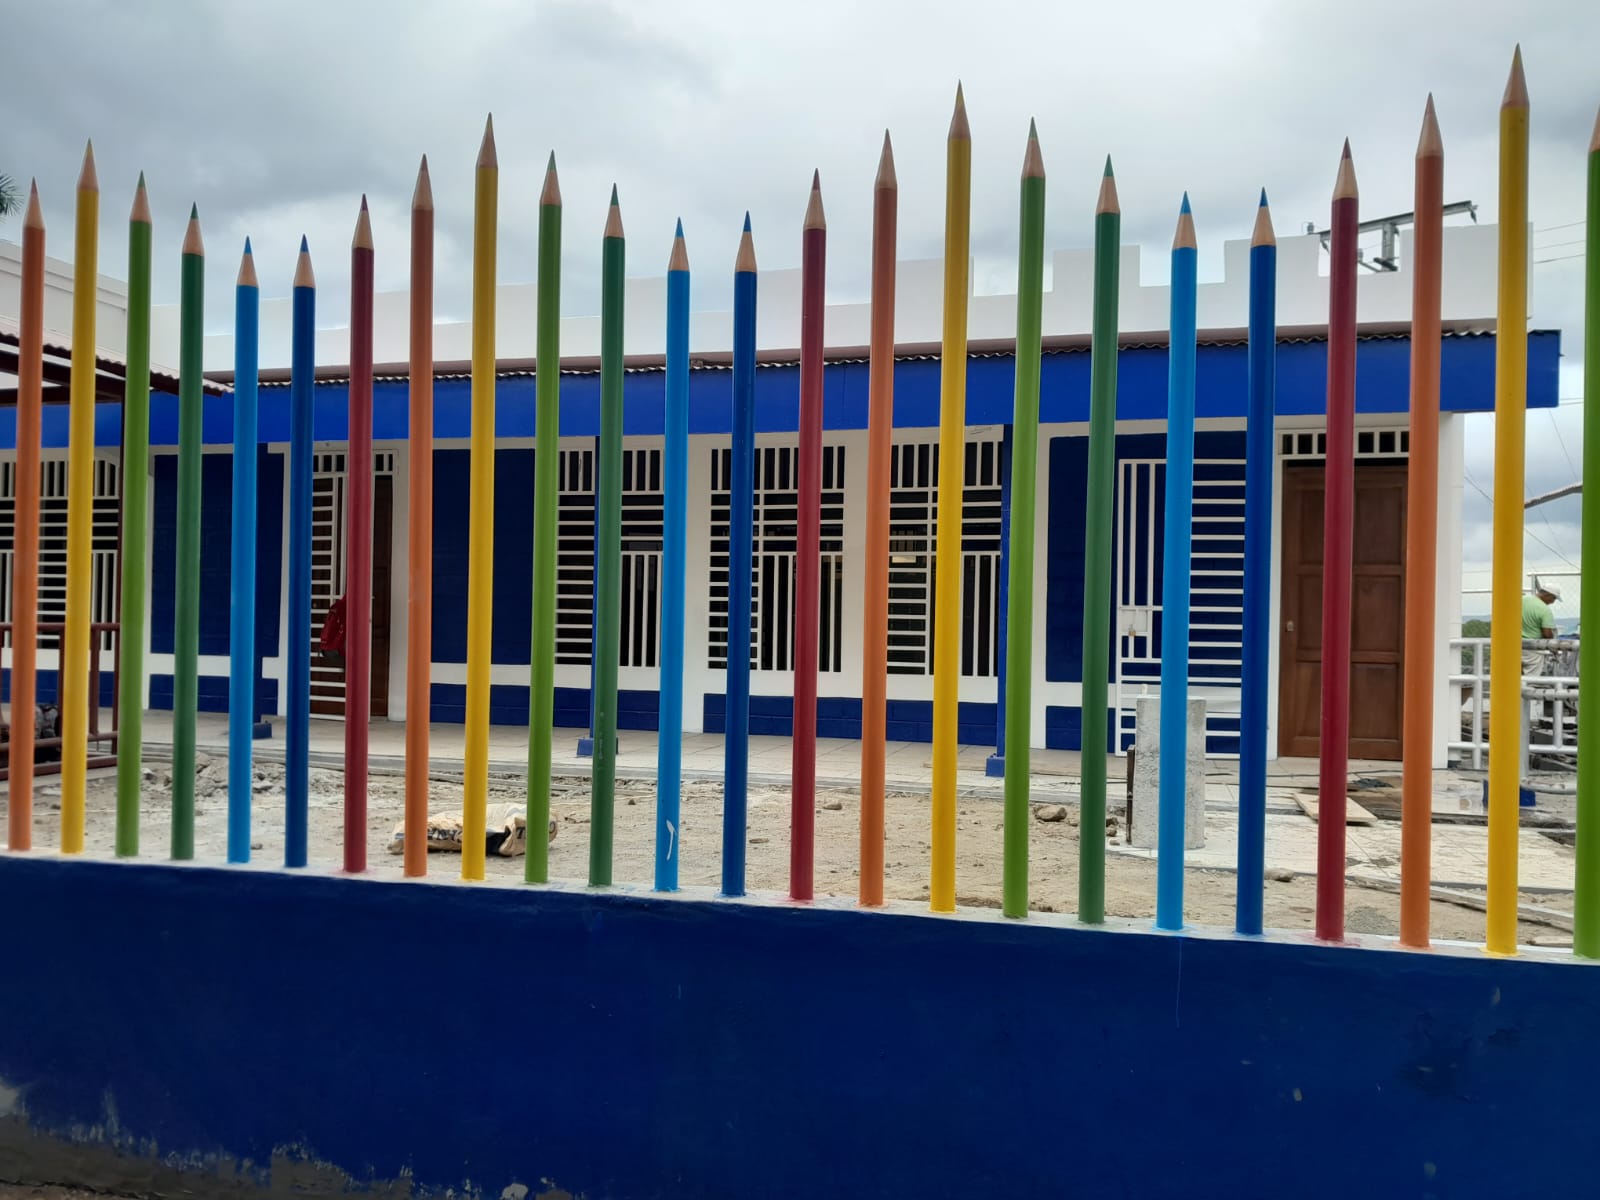 reconstrucción del centro escolar barrilete de colores